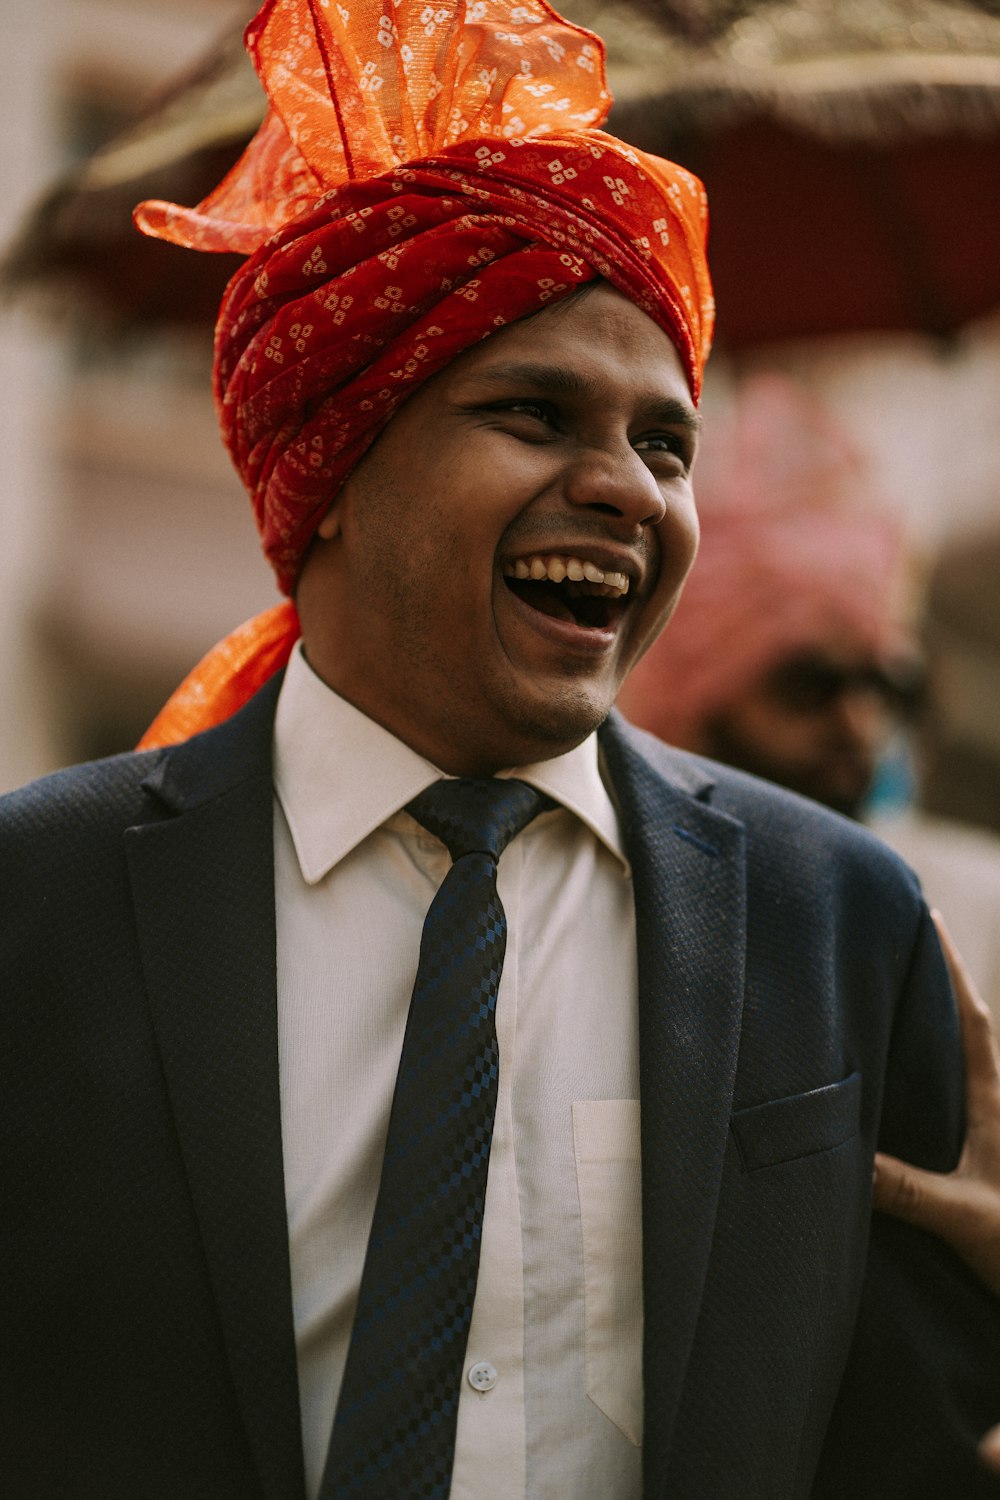 Ein Mann mit Turban, lacht und trägt einen Anzug